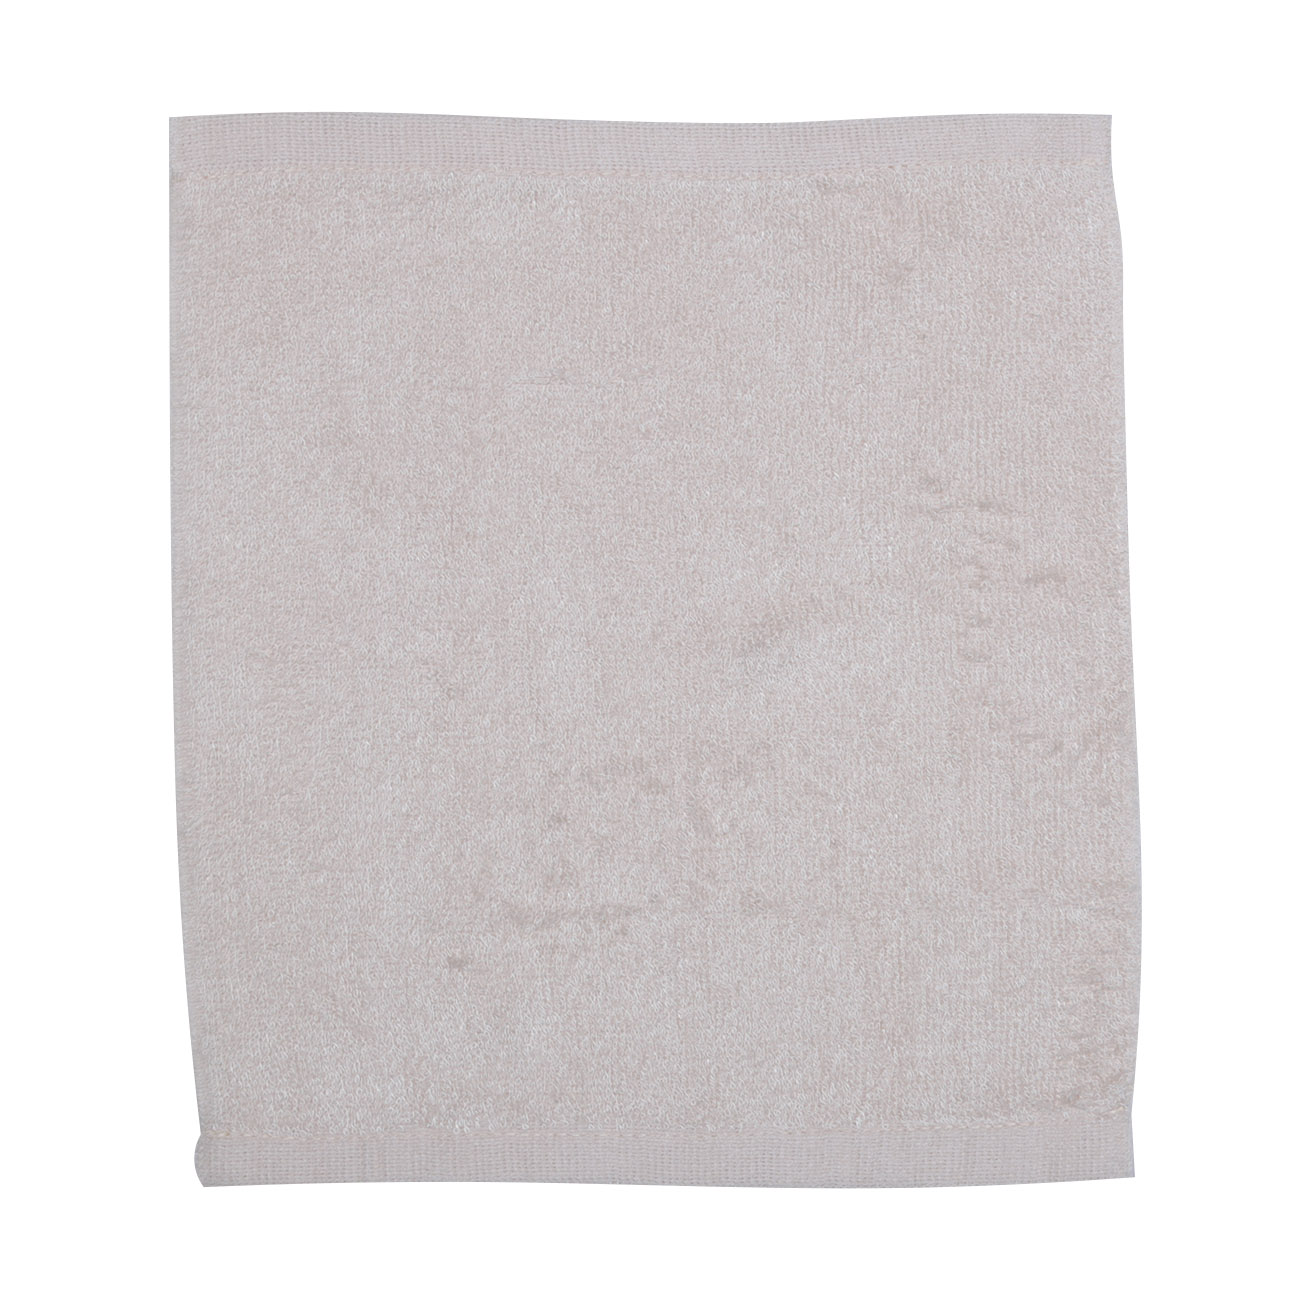 Тряпка-полотенце для кухни, 25х25 см, 3 шт, древесное волокно, серая/бежевая, Clean изображение № 3